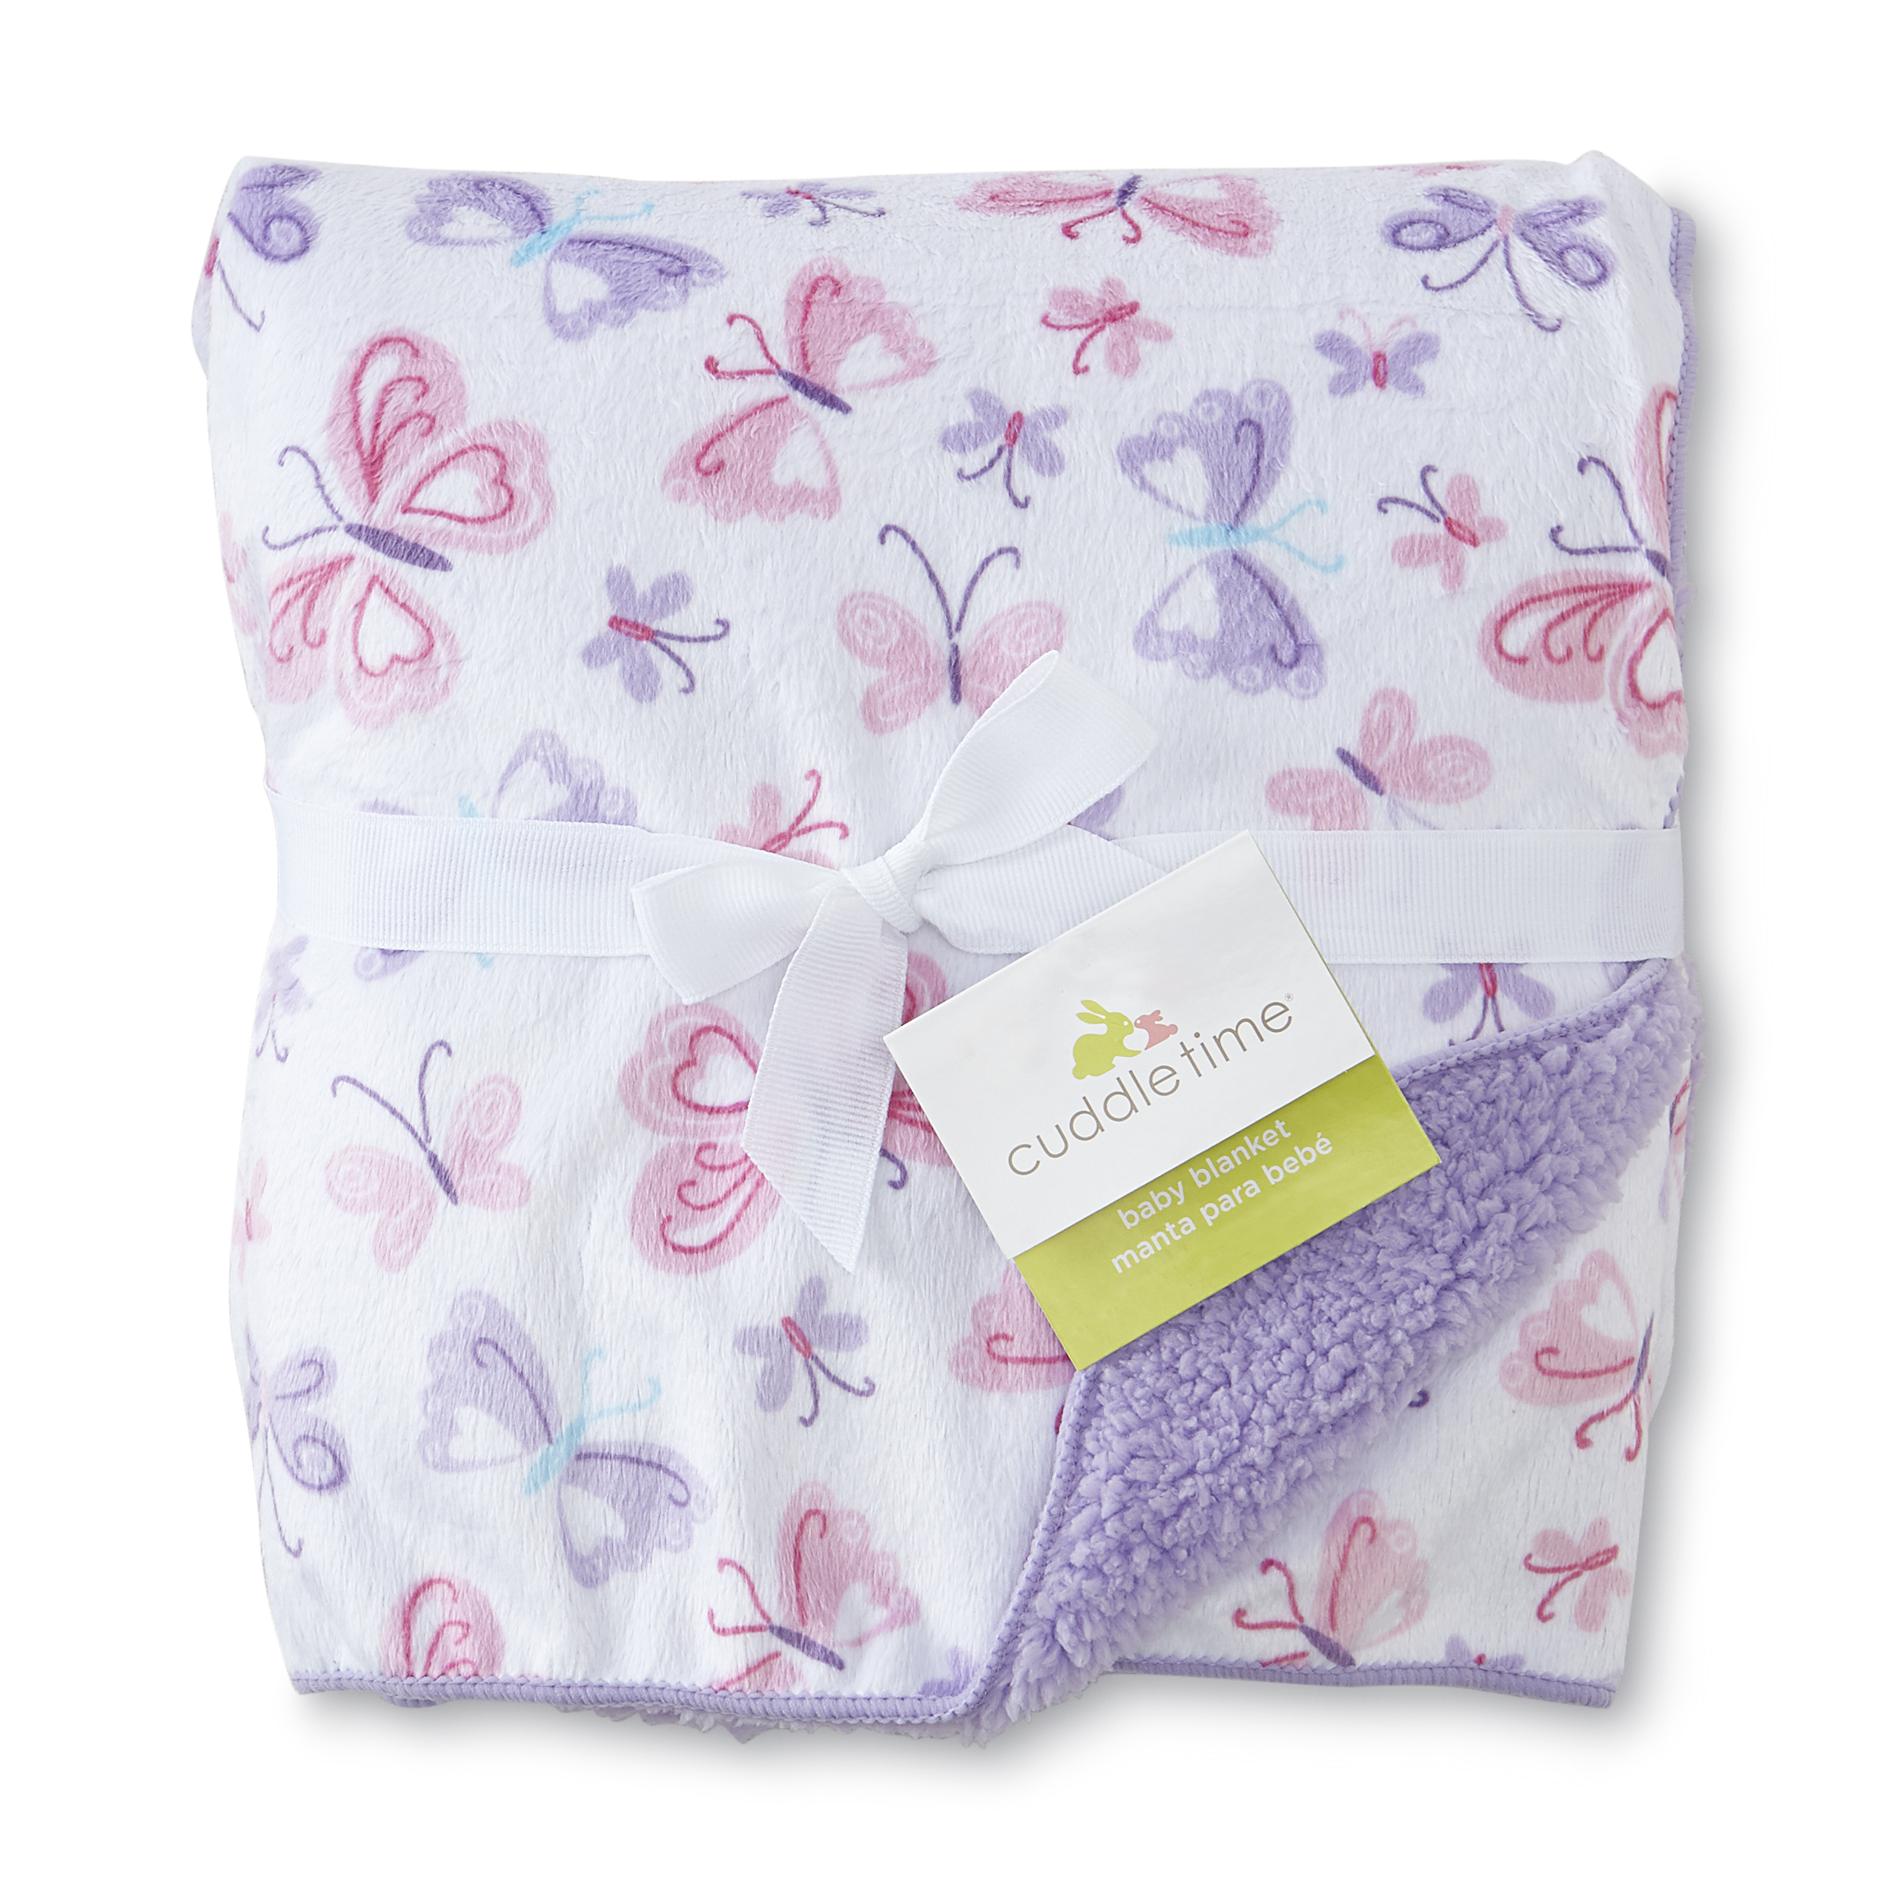 Cuddletime Infant Girl's Plush Blanket - Butterflies